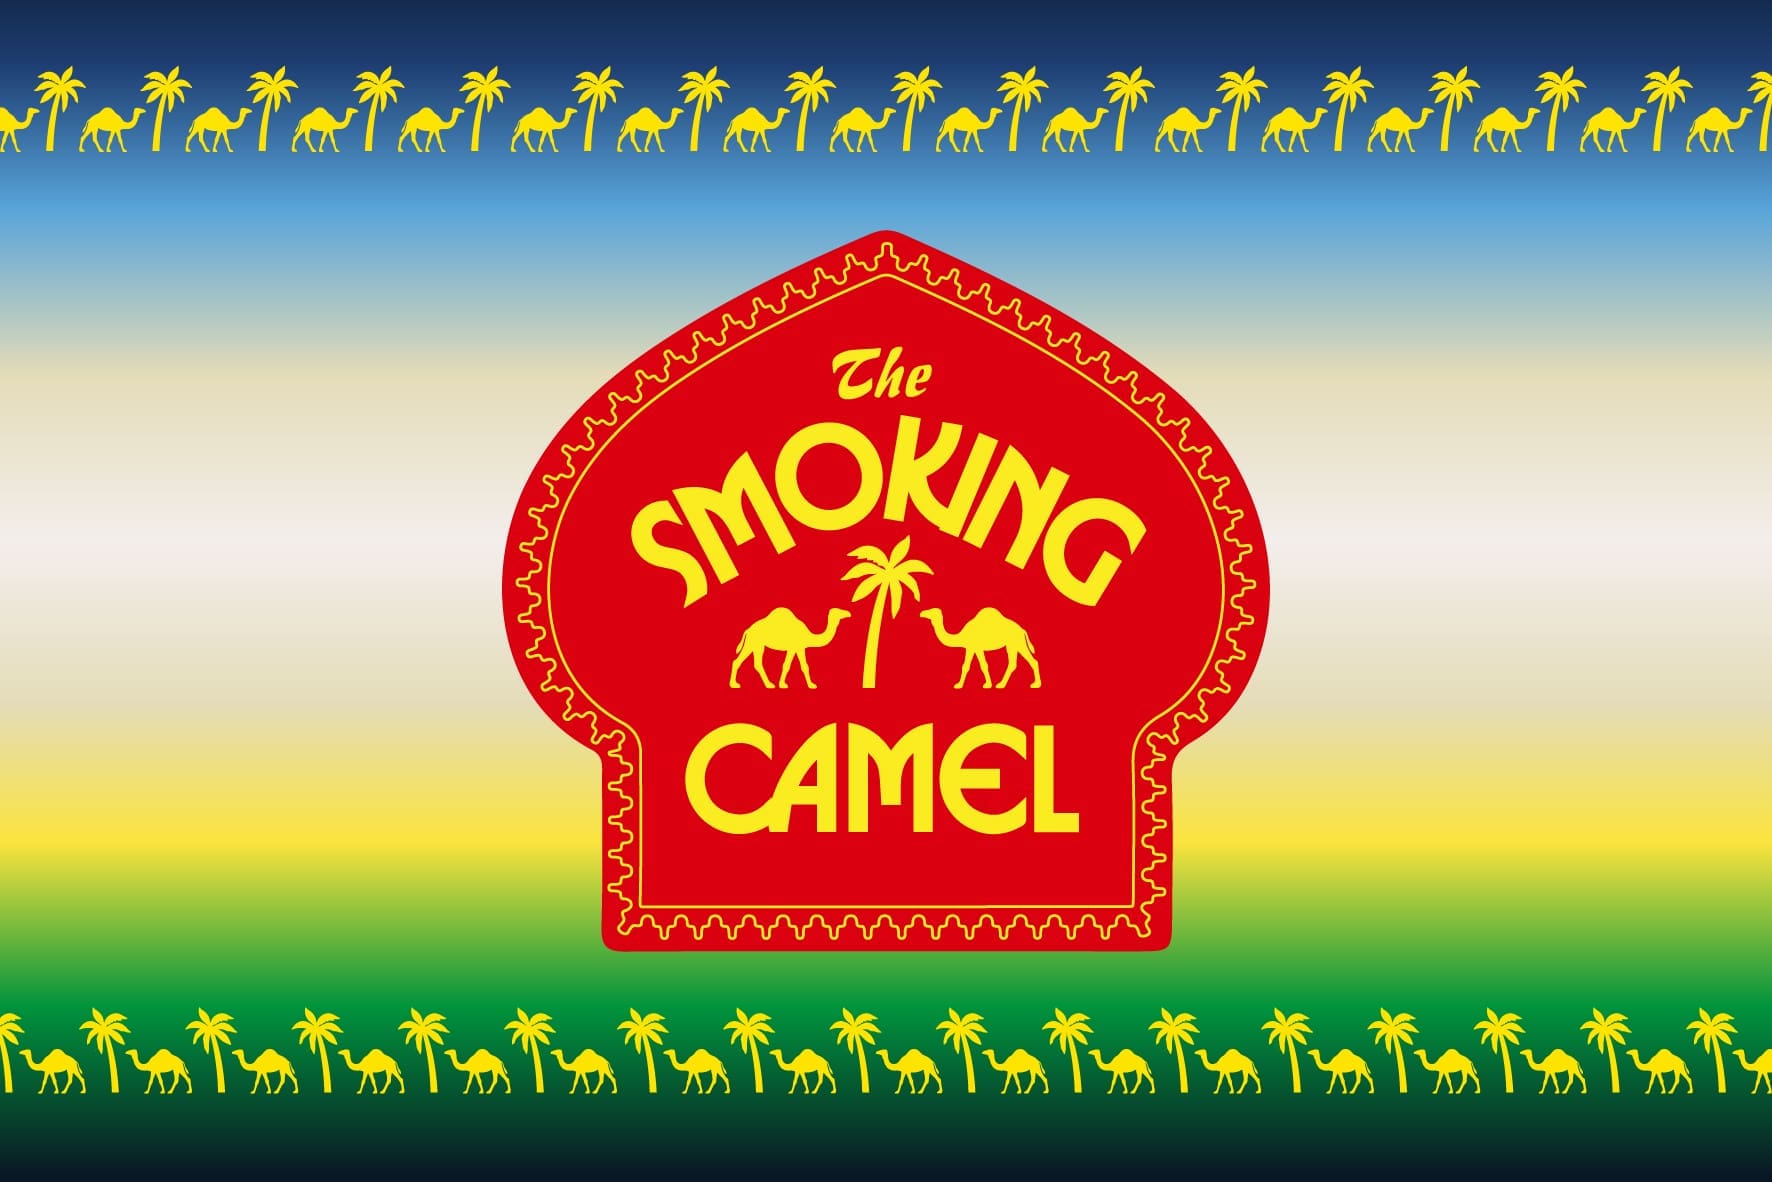 The Smoking Camel – Brand